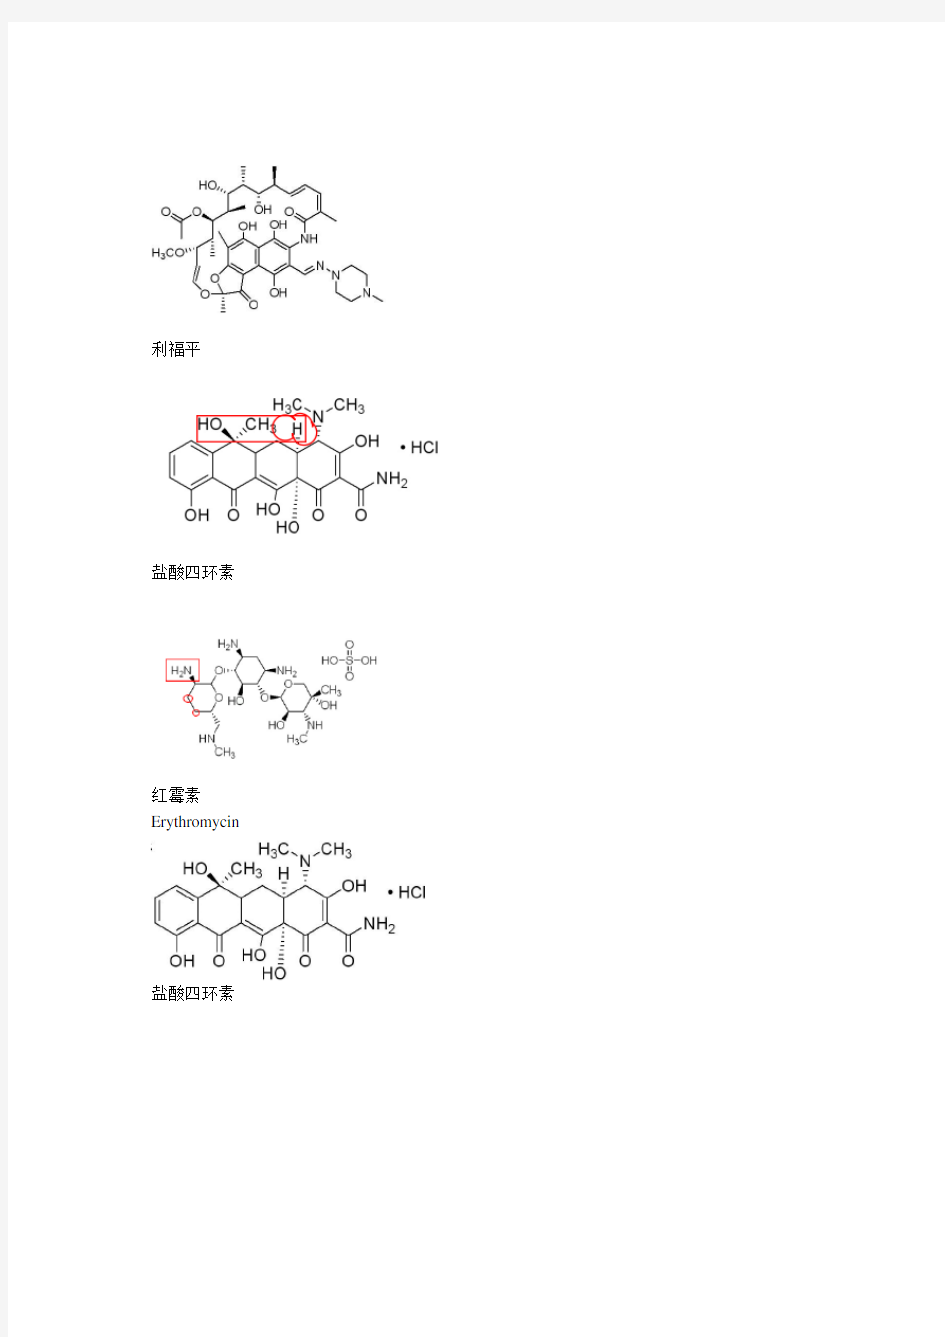 四环素类抗生素分子结构